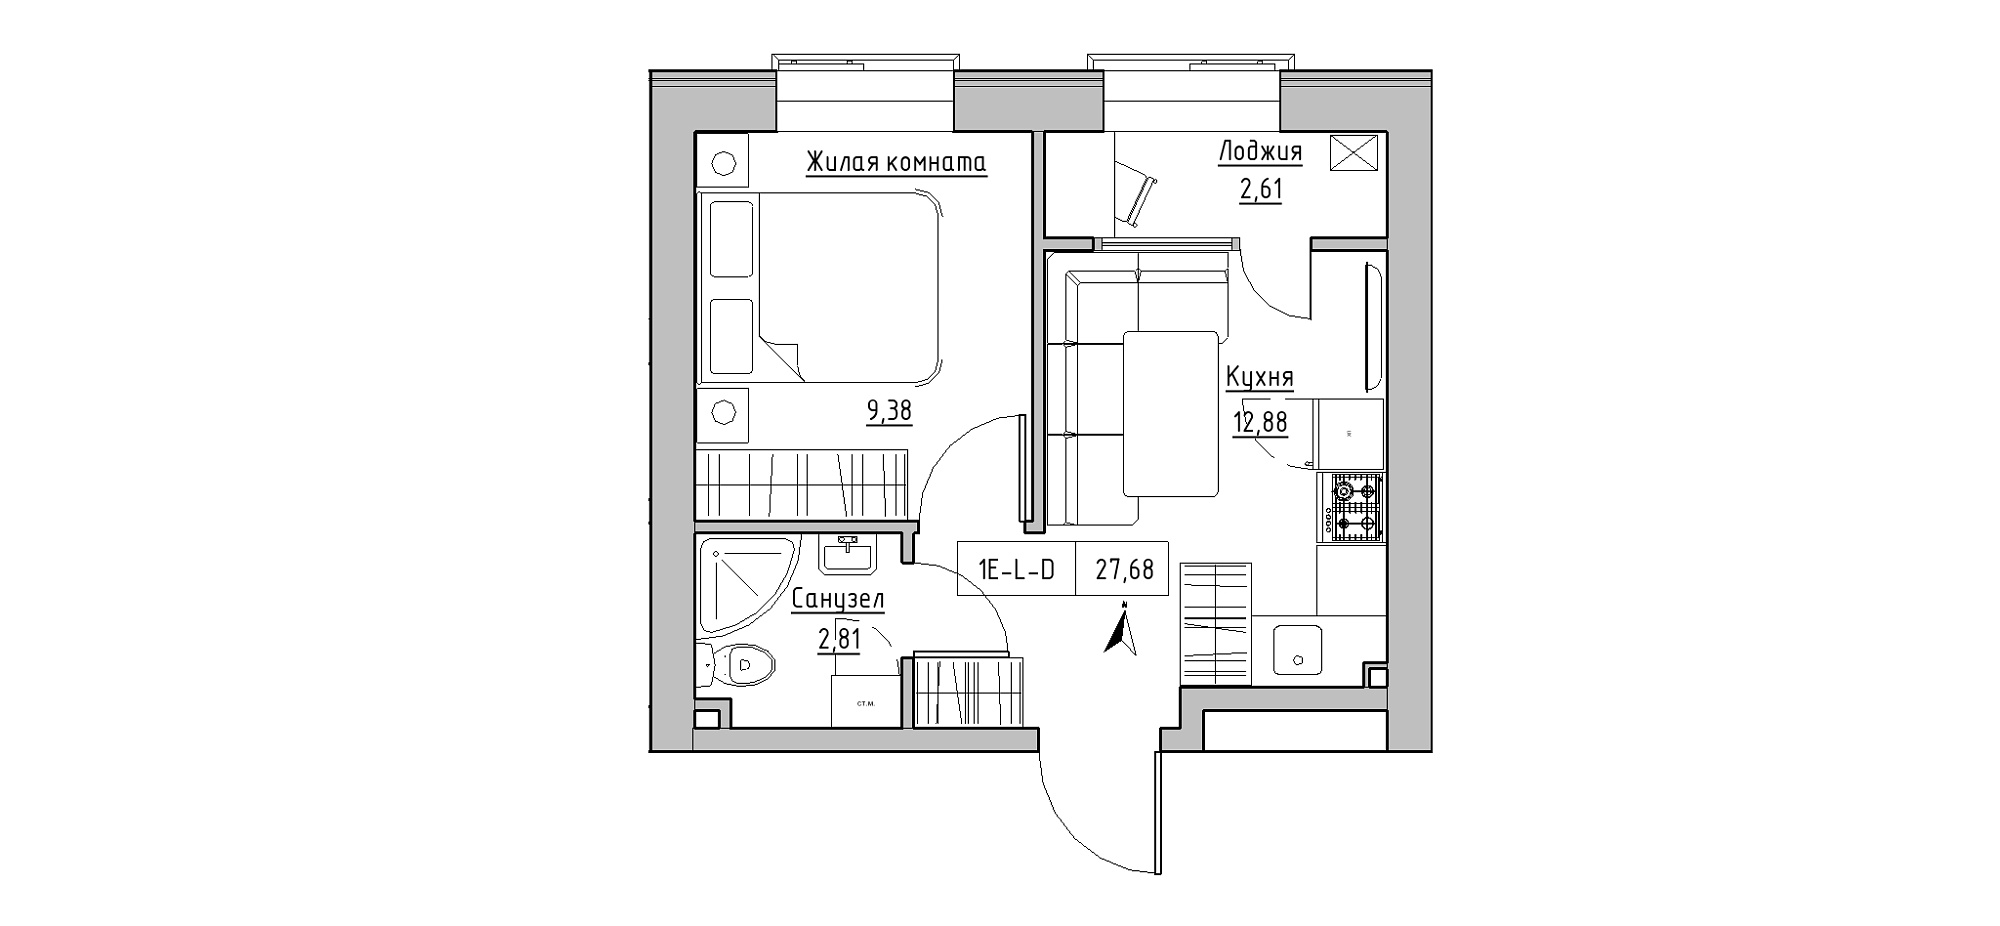 Планування 1-к квартира площею 27.68м2, KS-020-03/0001.